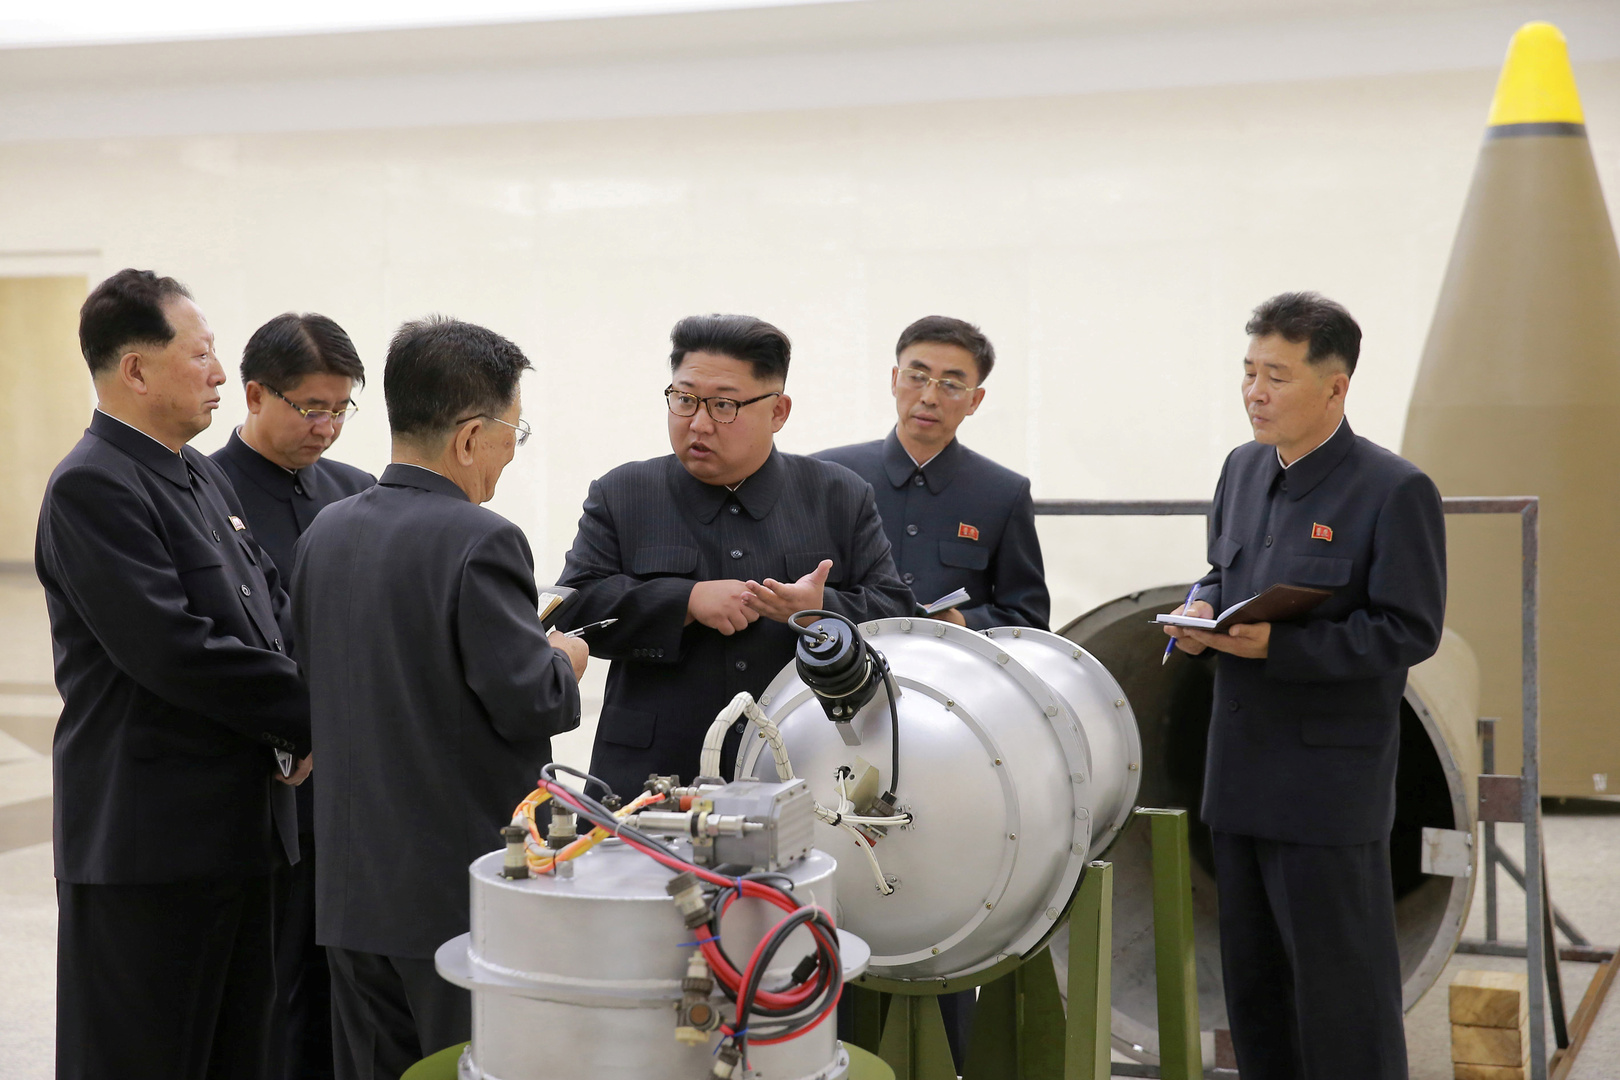 كوريا الجنوبية.. الكشف عن مشروع مريب لبناء محطة نووية سرية في كوريا الشمالية